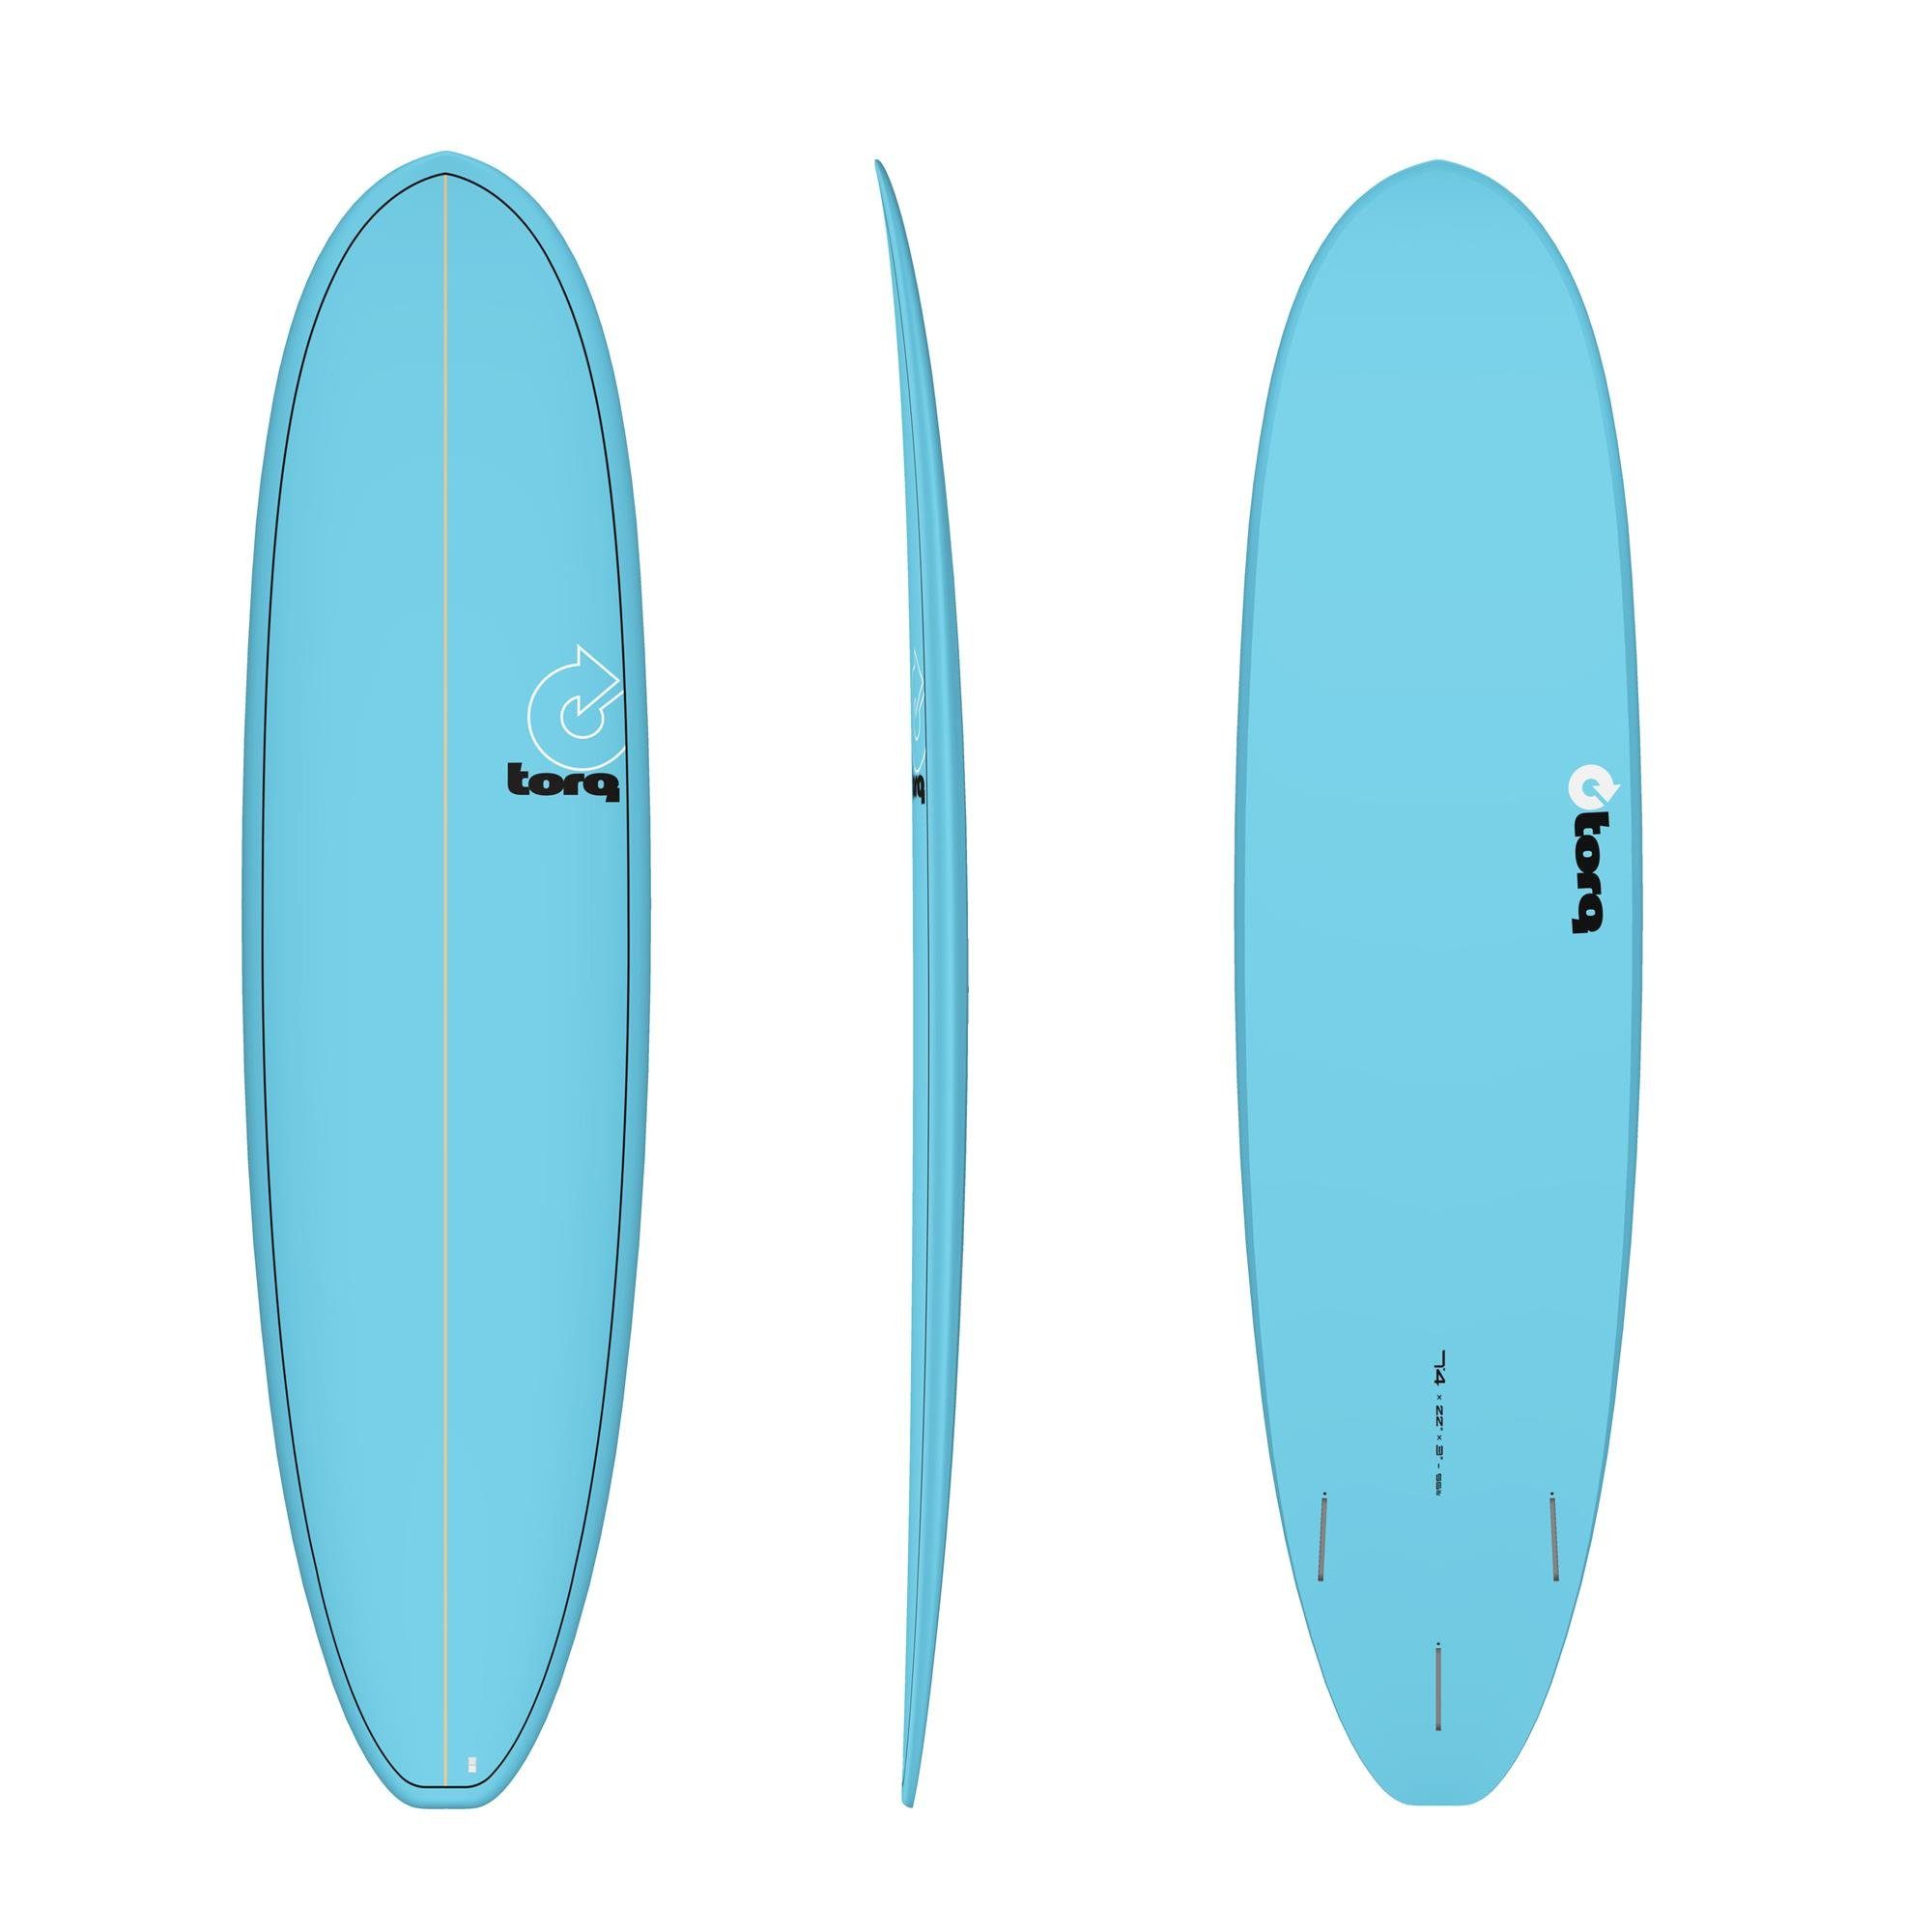 TORQ Wellenreiter Surfboard TORQ Epoxy TET 7.4 VP Funboard Blue, Funboard, (Board)